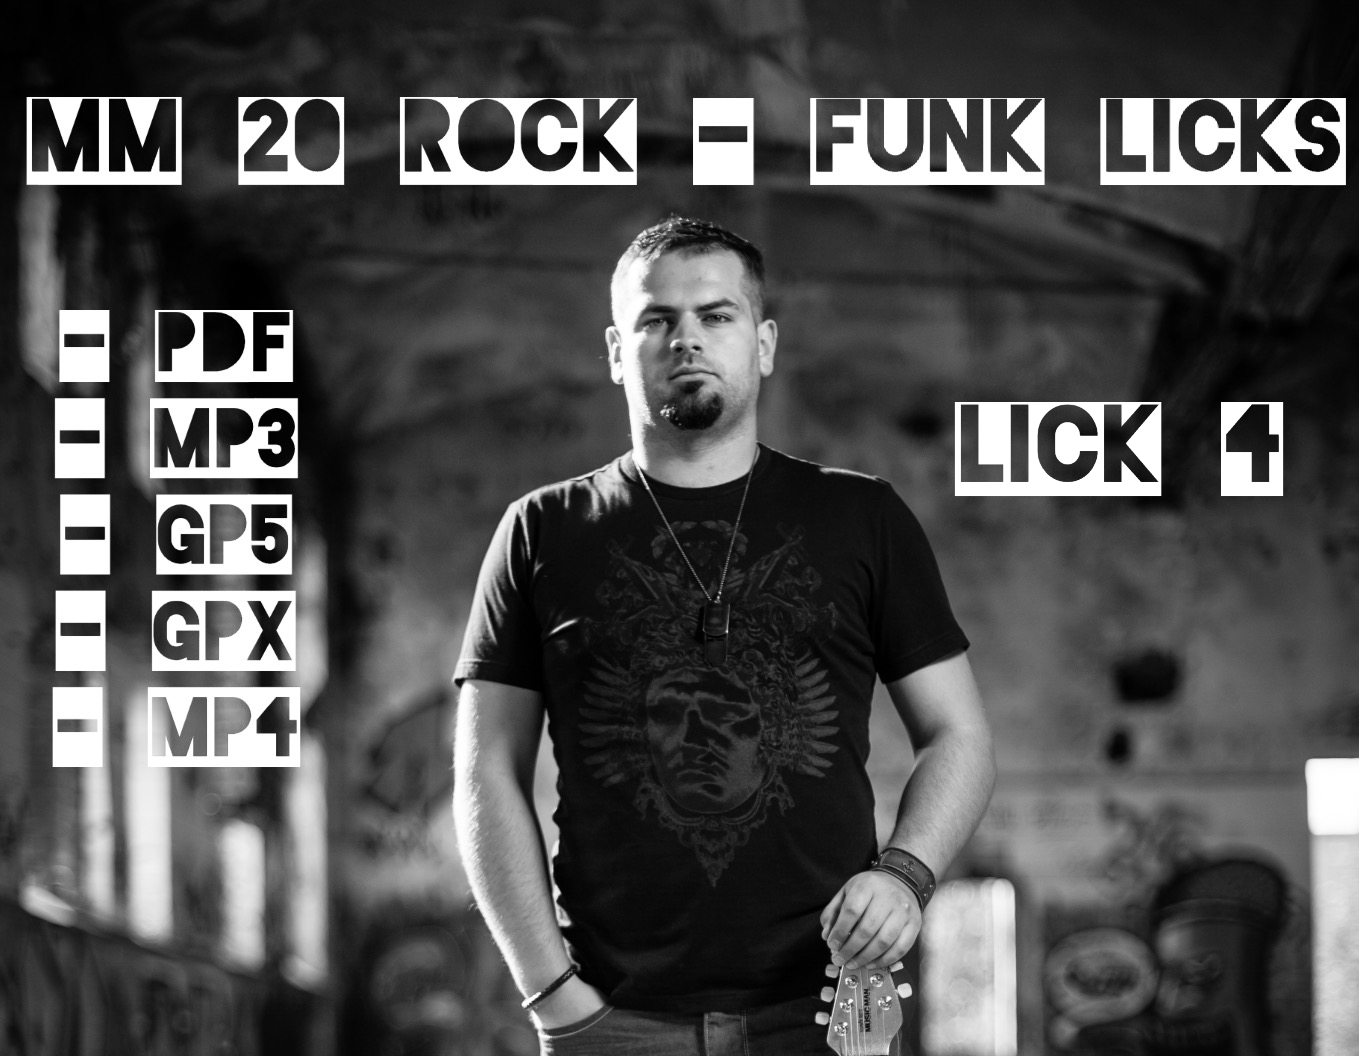 MM 20 Rock-Funk Licks, LICK 4